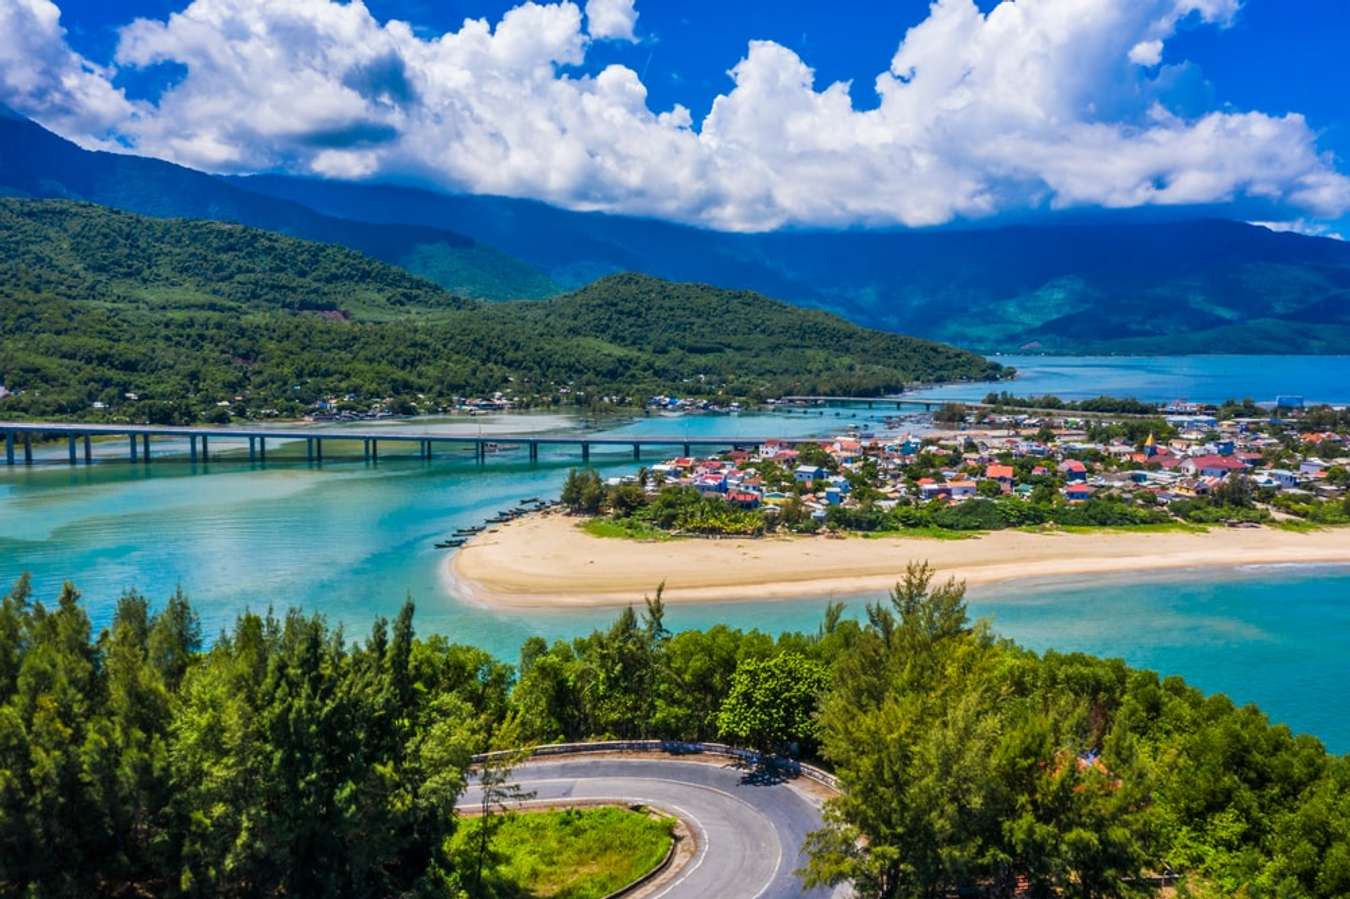 Lăng Cô: Lăng Cô là một trong những điểm đến nổi tiếng của du lịch miền Trung Việt Nam. Với bãi biển trải dài, khung cảnh thiên nhiên hữu tình và nhiều khách sạn sang trọng, Lăng Cô sẽ là điểm đến tuyệt vời cho một chuyến du lịch của bạn. Cùng xem hình ảnh tuyệt đẹp về Lăng Cô để cảm nhận được sức hút của nó.